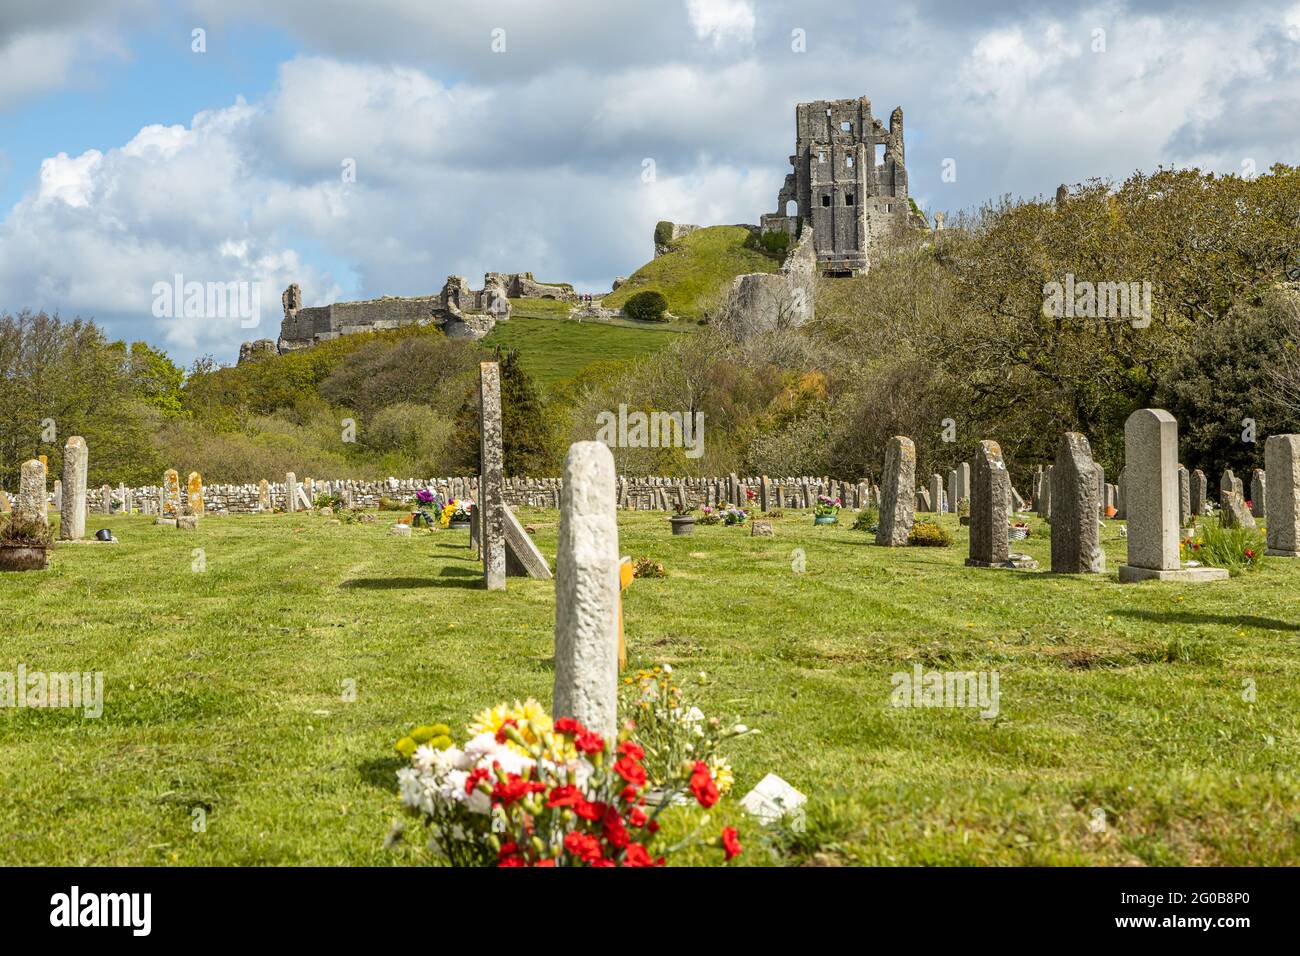 Castello di Corfe una roccaforte sassone annidata nei pittoreschi paesaggi delle colline di Purbeck si affaccia sul cimitero del villaggio, Dorset Inghilterra UK Foto Stock